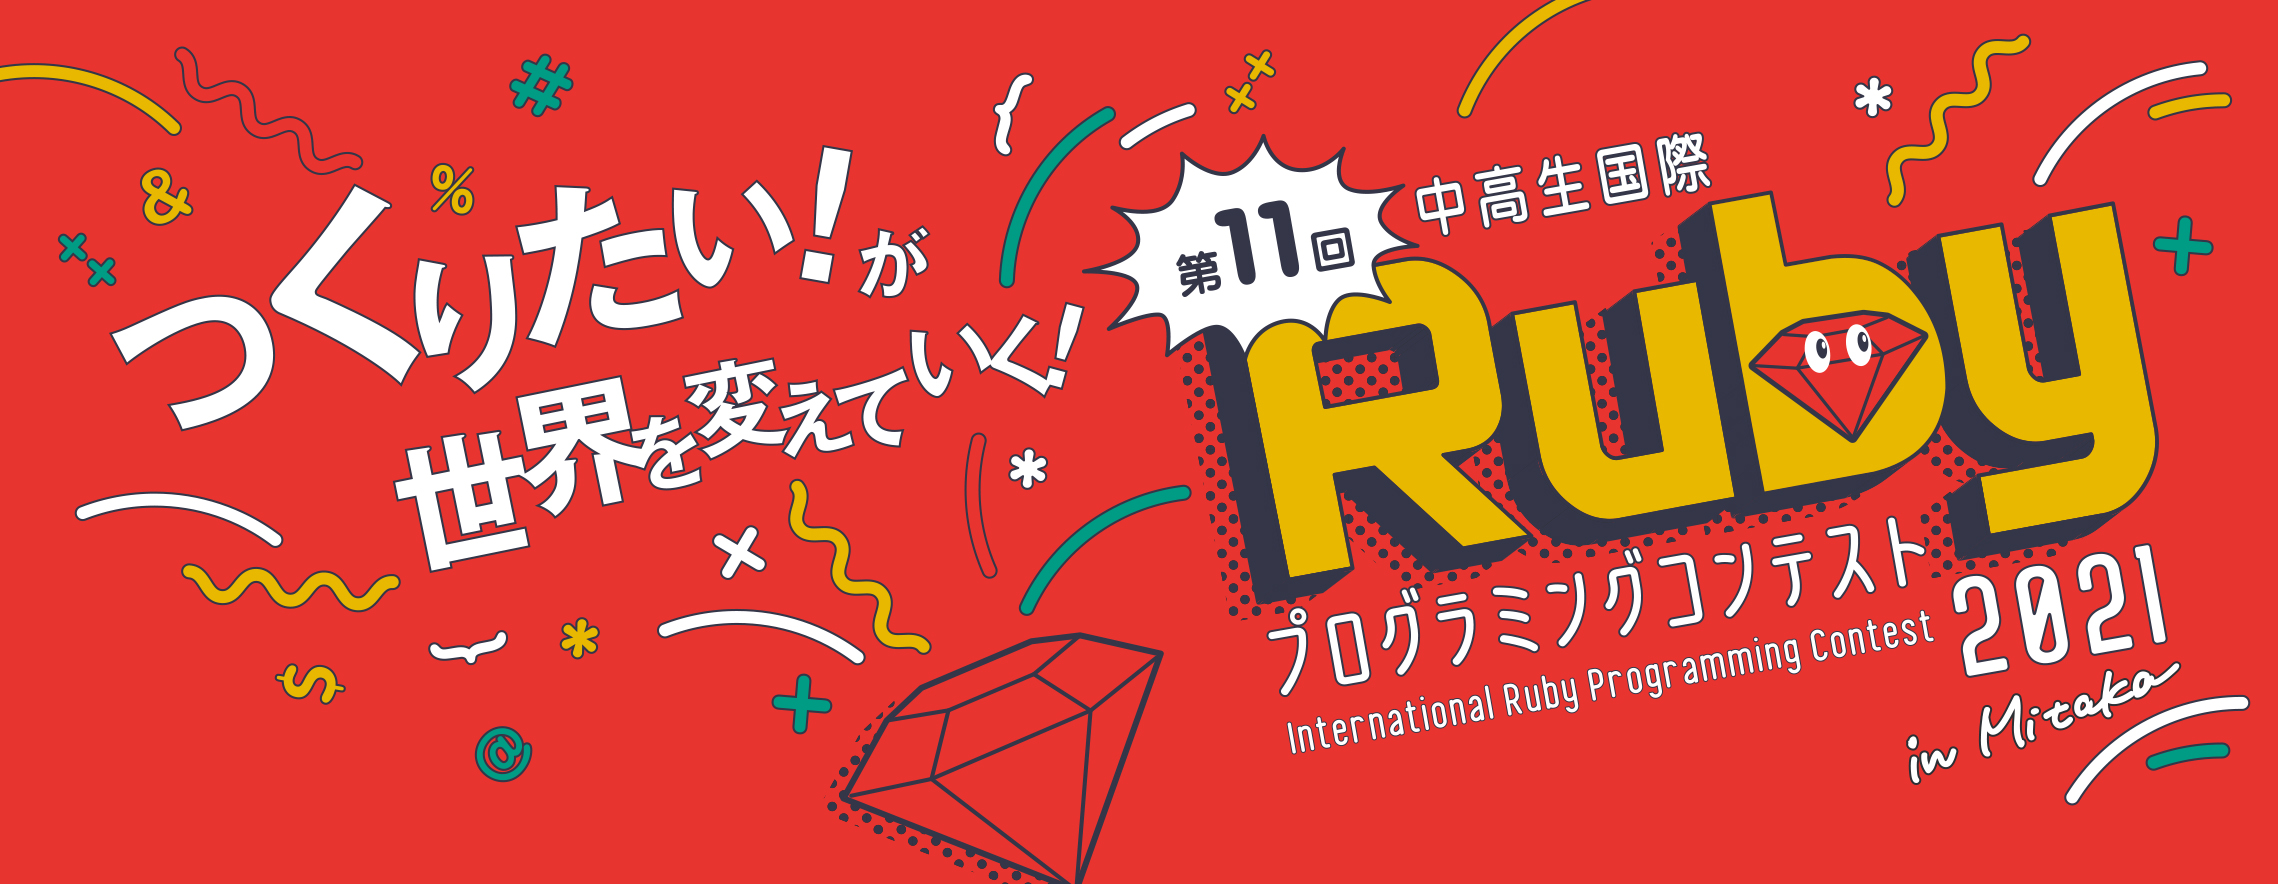 中高生国際 Ruby コンテストに Silver PARTNER として協賛しました